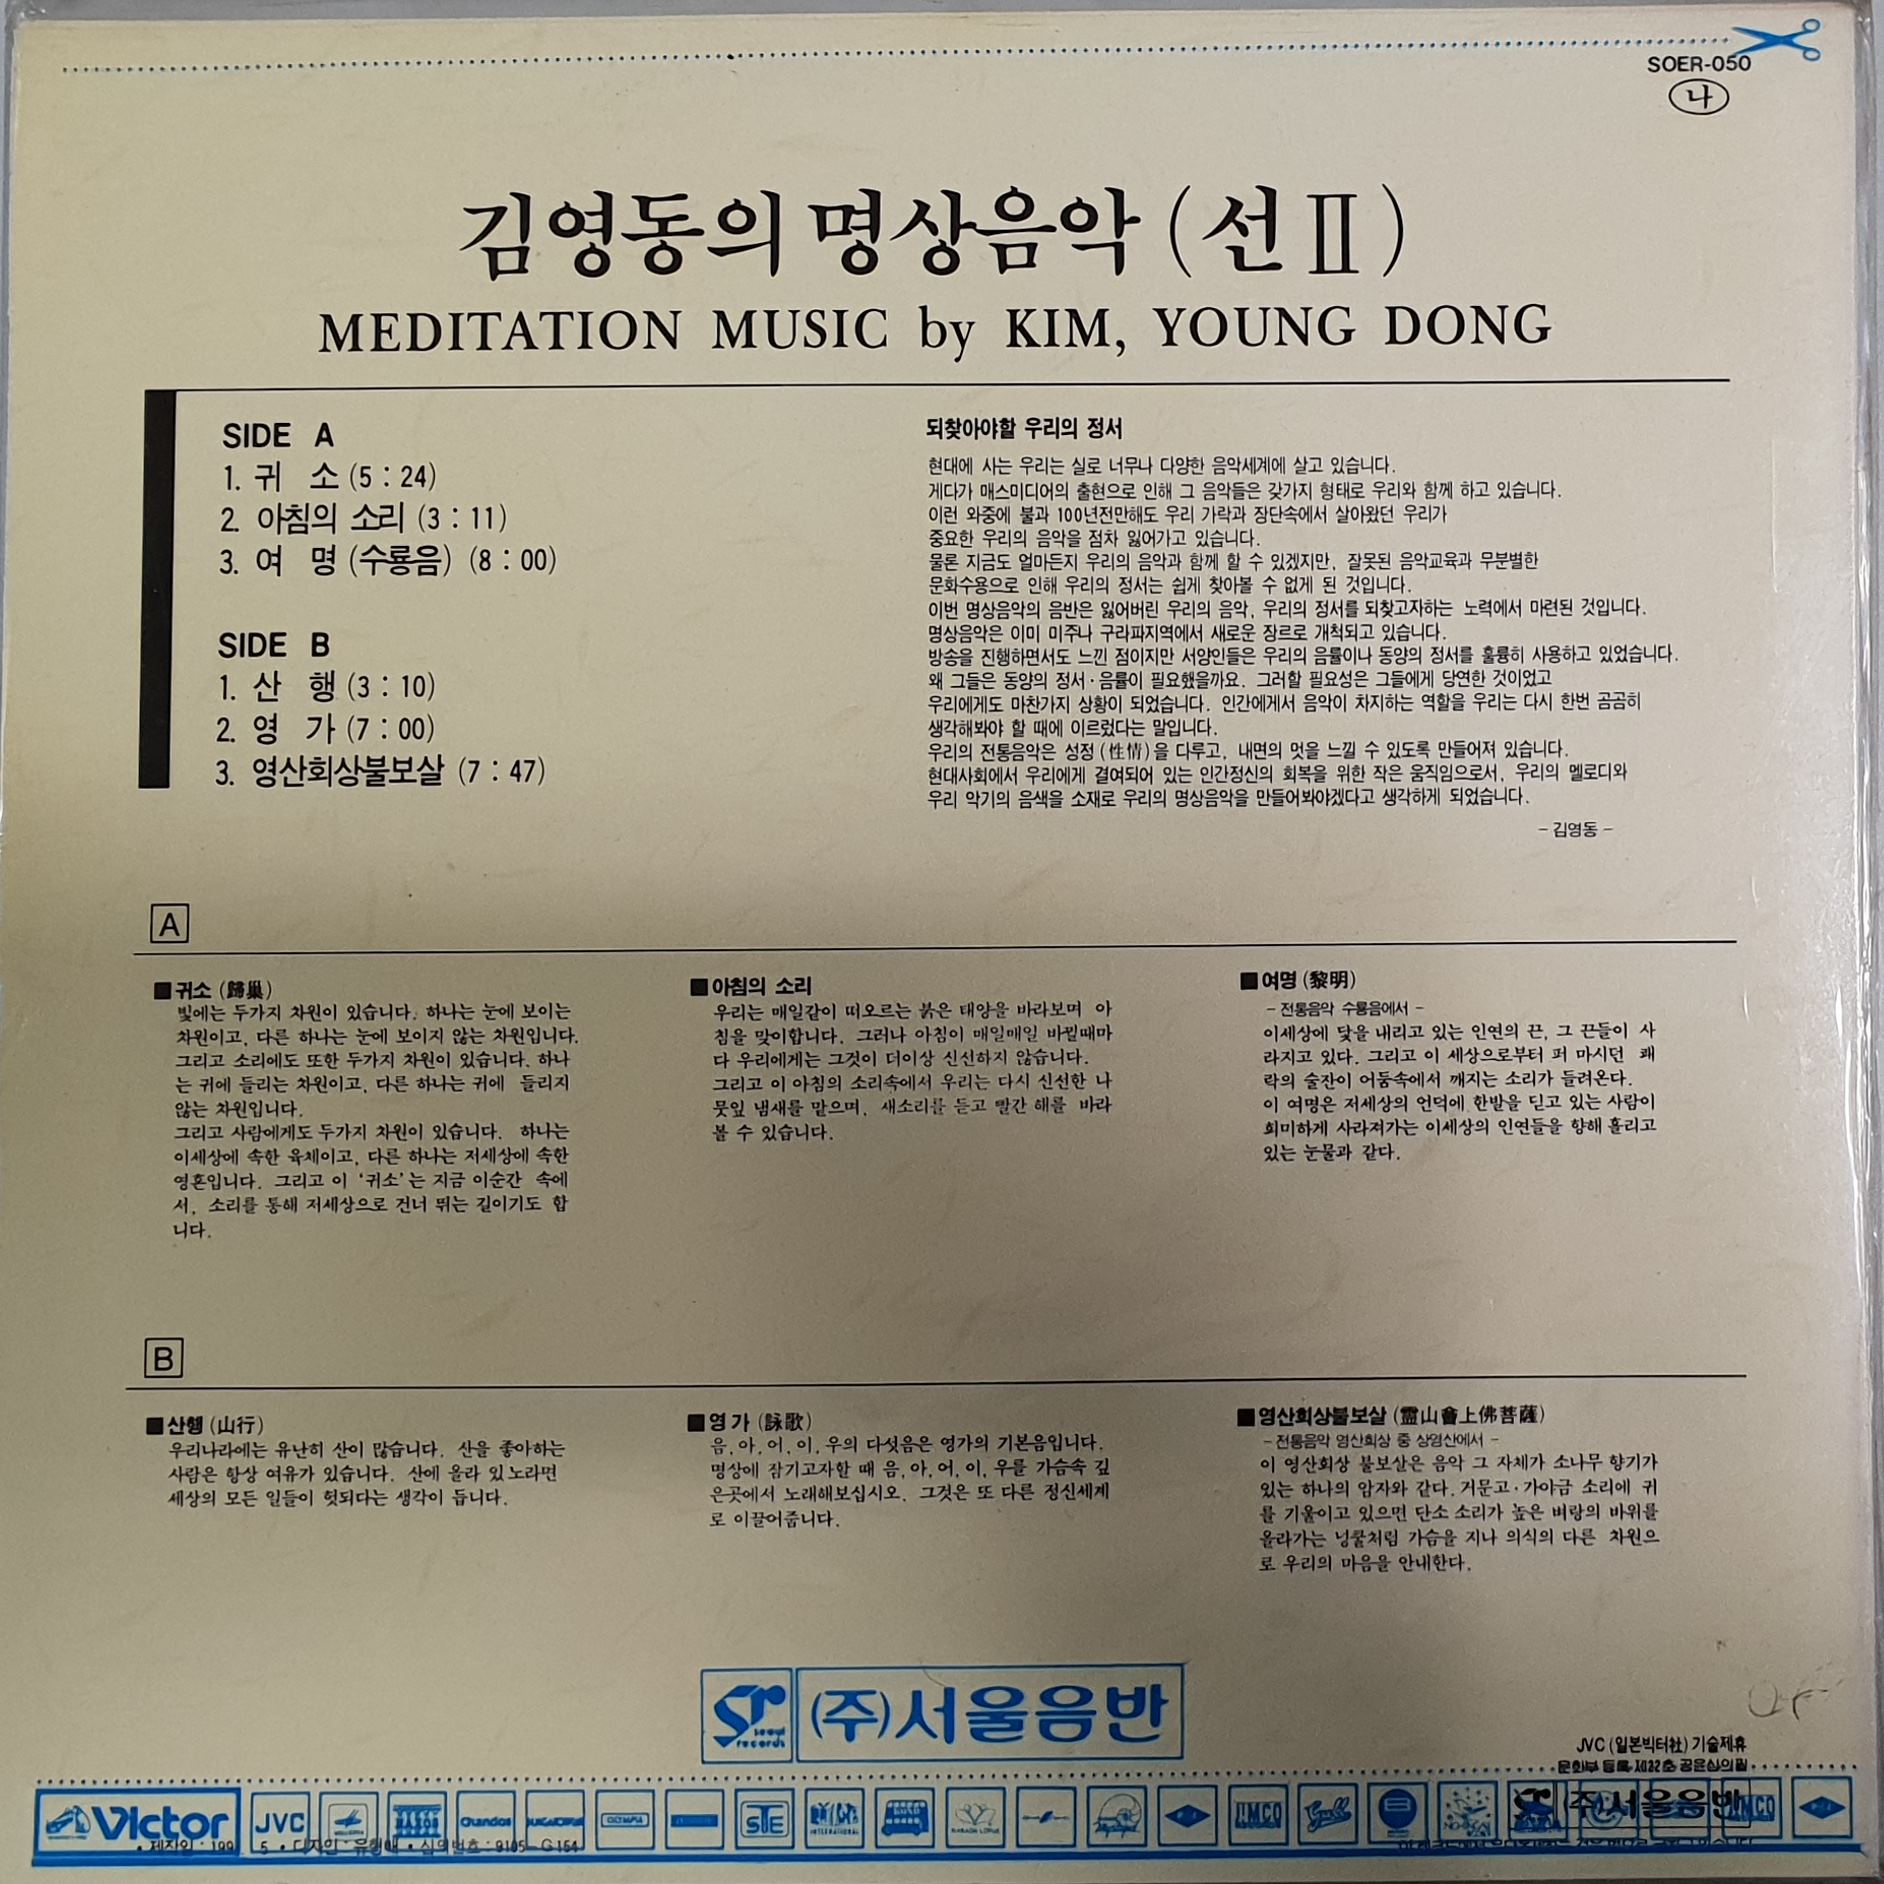 LP) 김영동 - 명상음악 선 2 (禪Ⅱ)